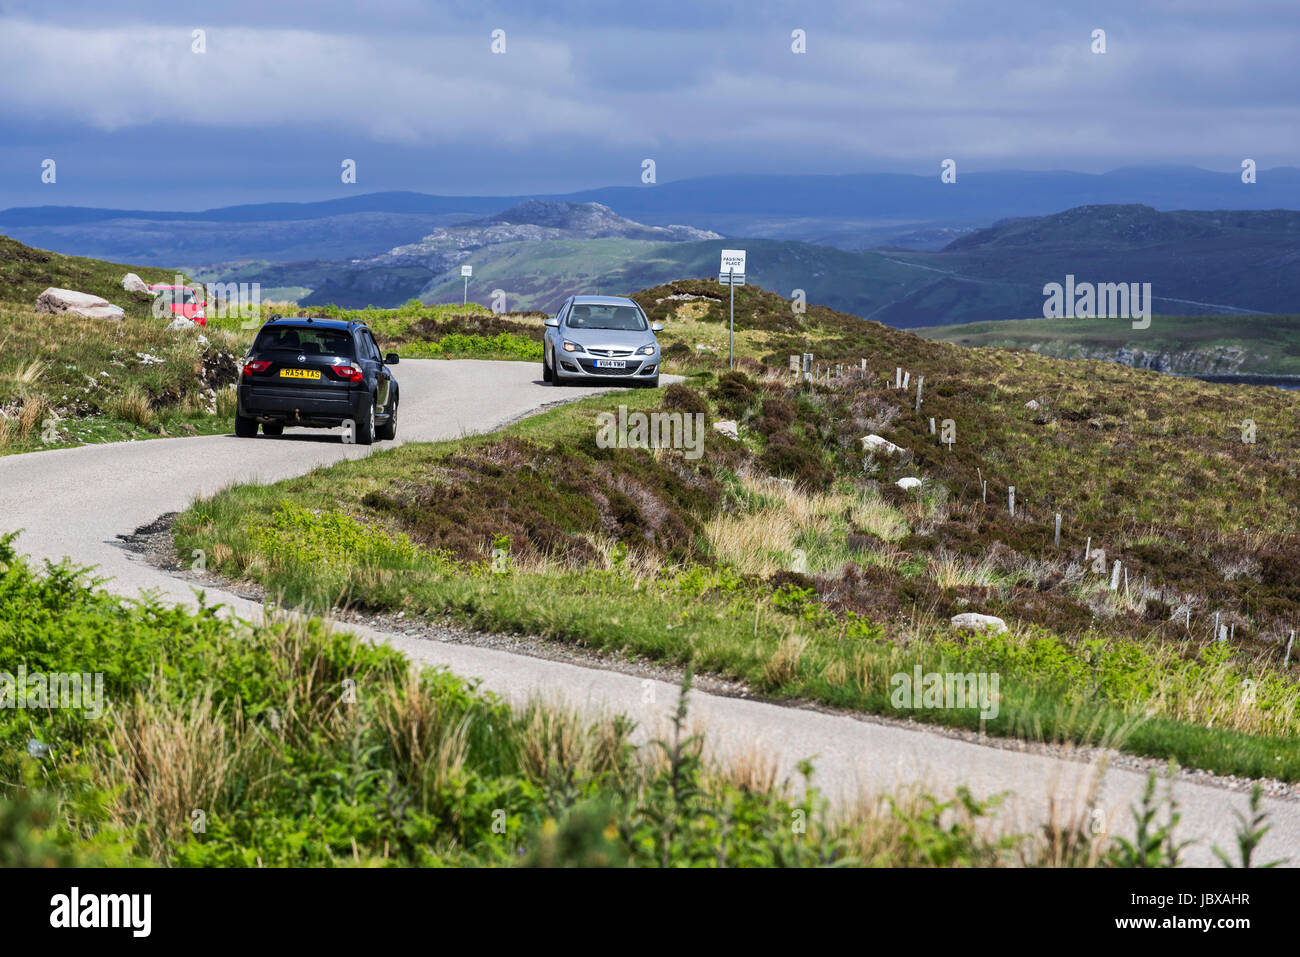 Bei vorbeifahrenden Autos setzen auf gewundenen einspurigen Straße in die schottischen Highlands, Schottland, Großbritannien Stockfoto